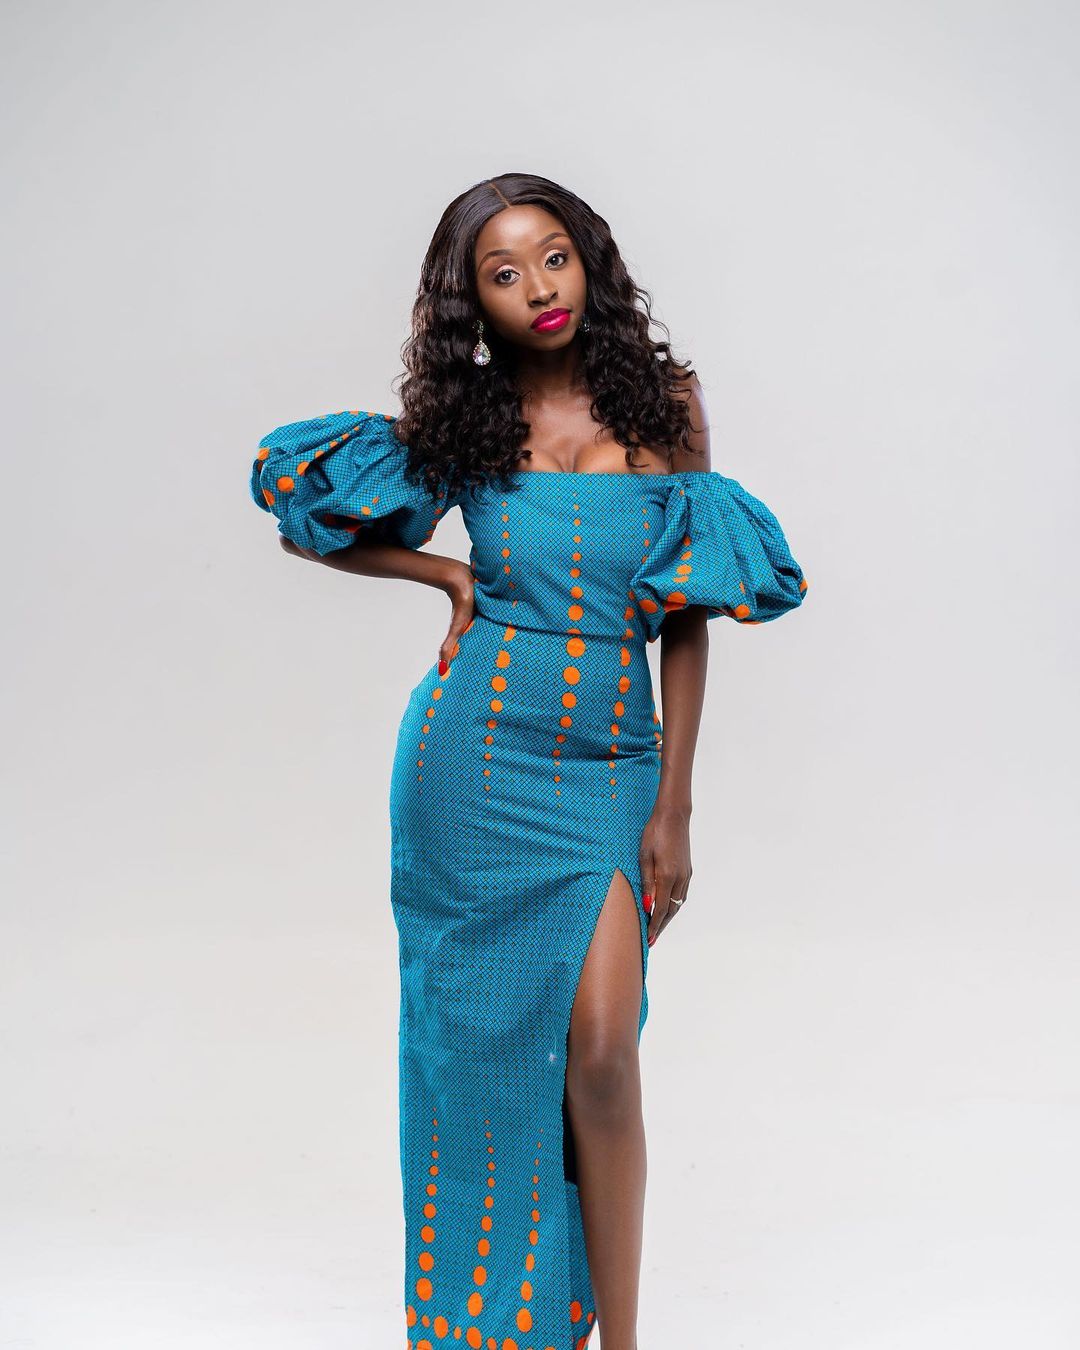 ankara dresses designs images for black women - shweshwe 3